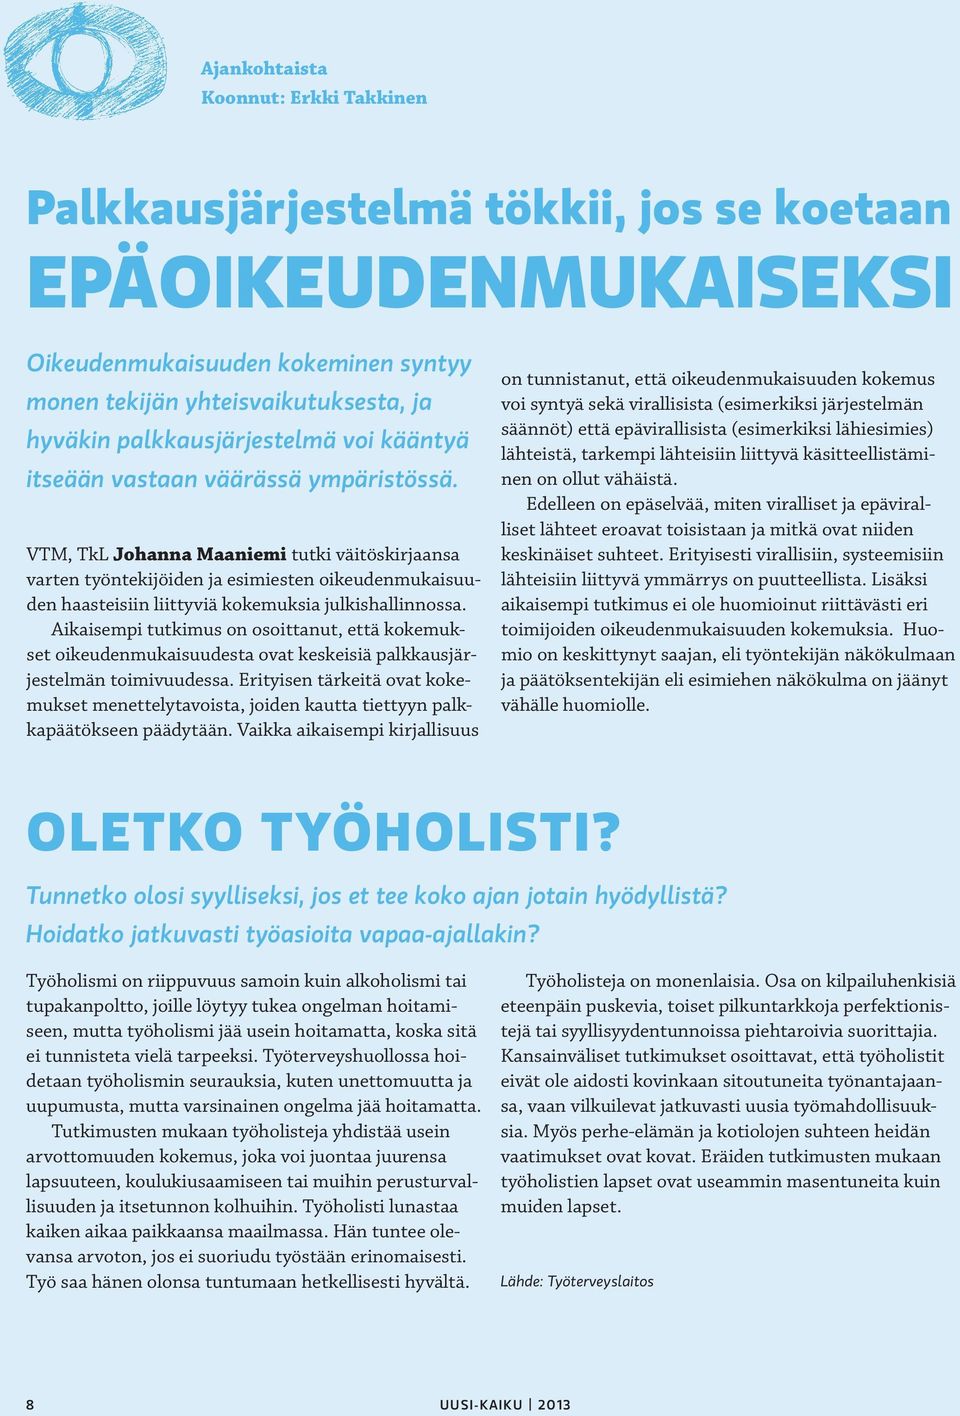 VTM, TkL Johanna Maaniemi tutki väitöskirjaansa varten työntekijöiden ja esimiesten oikeudenmukaisuuden haasteisiin liittyviä kokemuksia julkishallinnossa.